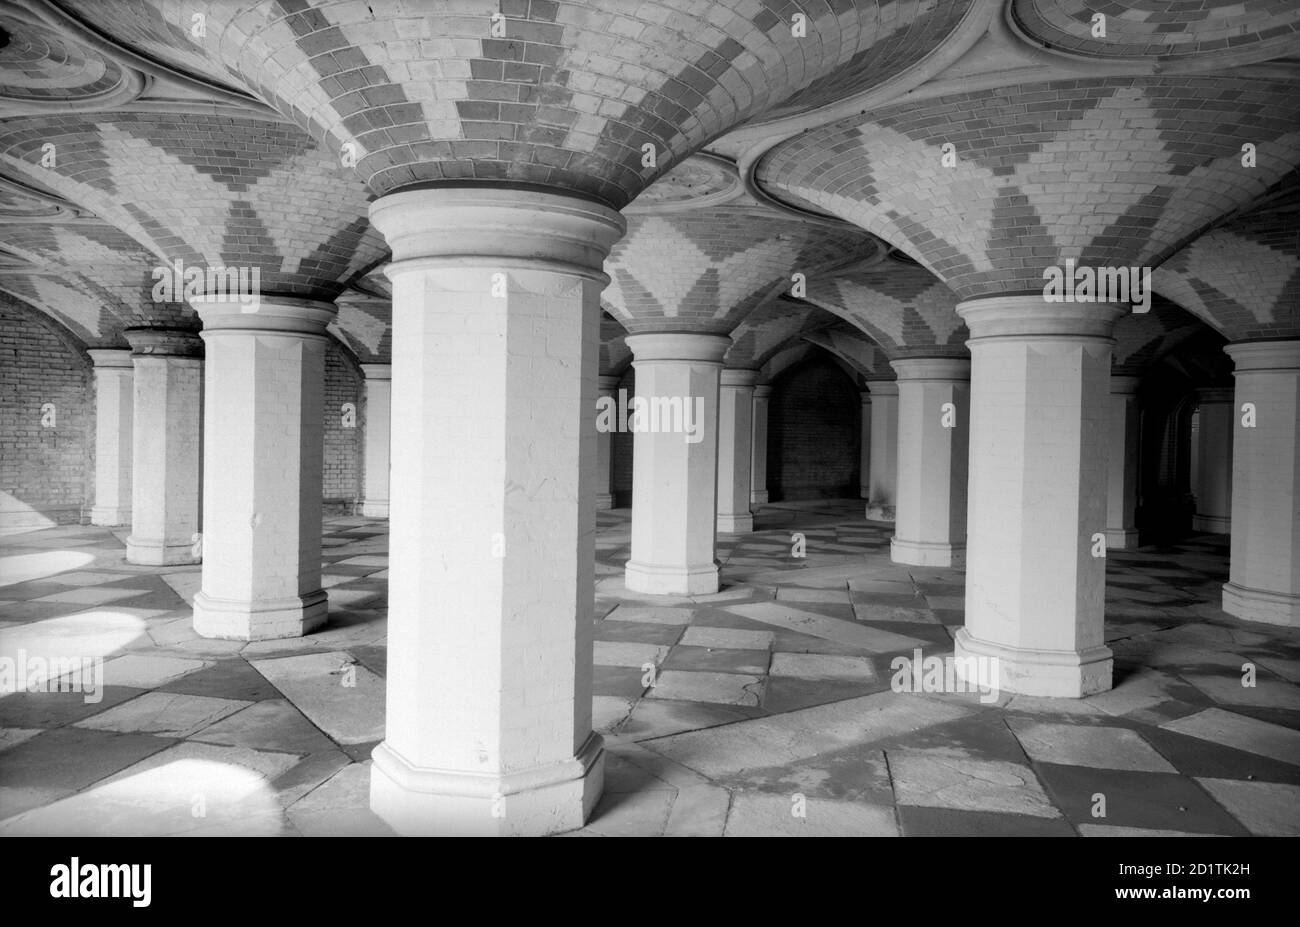 CRYSTAL PALACE, Sydenham, Greater London. Vista interna che mostra la galleria d'ingresso dalla stazione sotto la Parata del Palazzo di Cristallo. Fotografato da Eric de Mare tra il 1945 e il 1980. Foto Stock